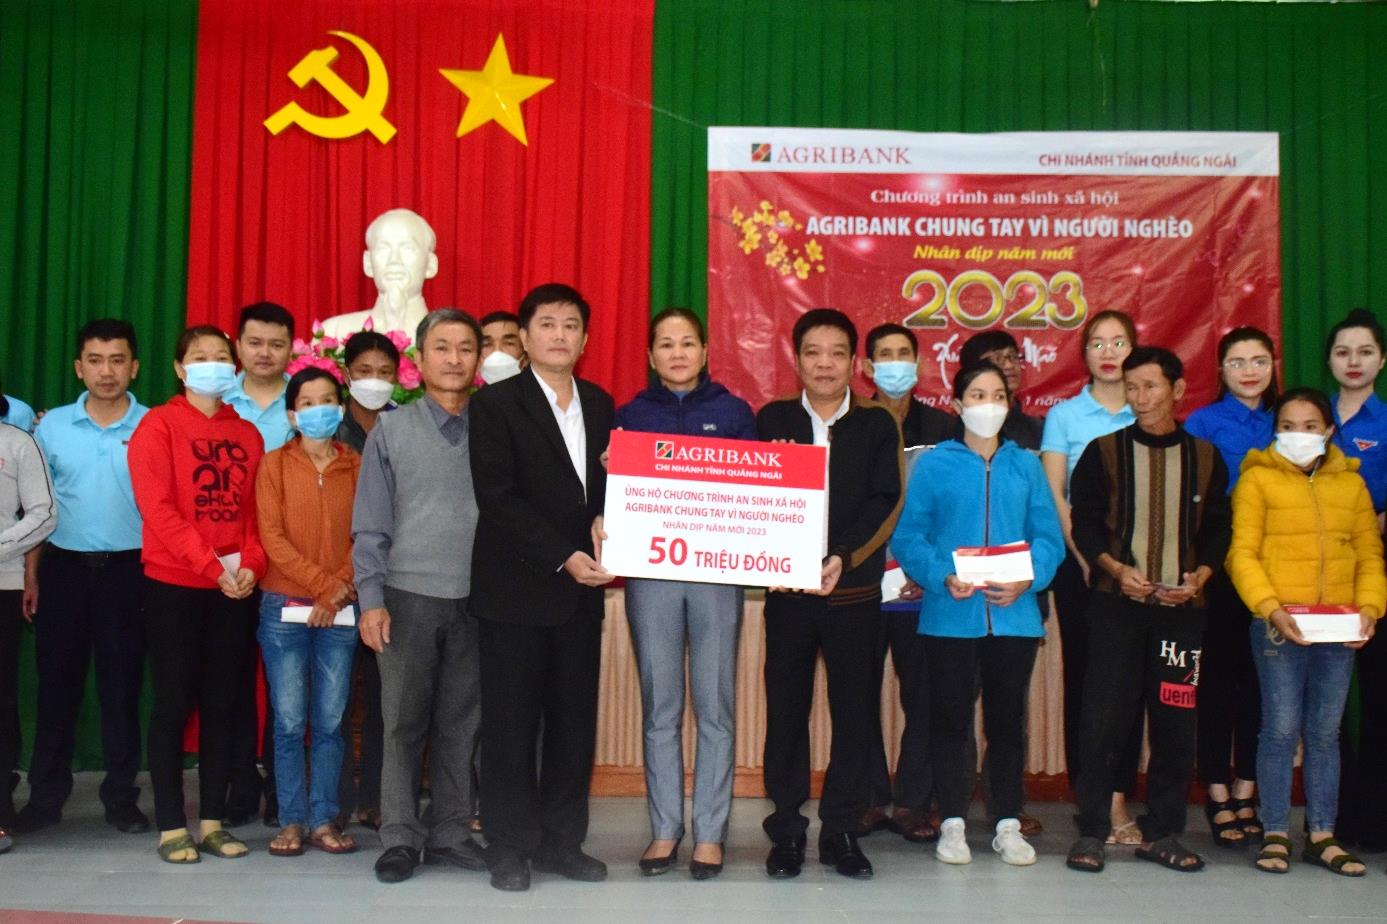 Ngân hàng Agribank chi nhánh tỉnh Quảng Ngãi tặng 100 suất quà tết cho người nghèo ở xã Tịnh Thọ, huyện Sơn Tịnh